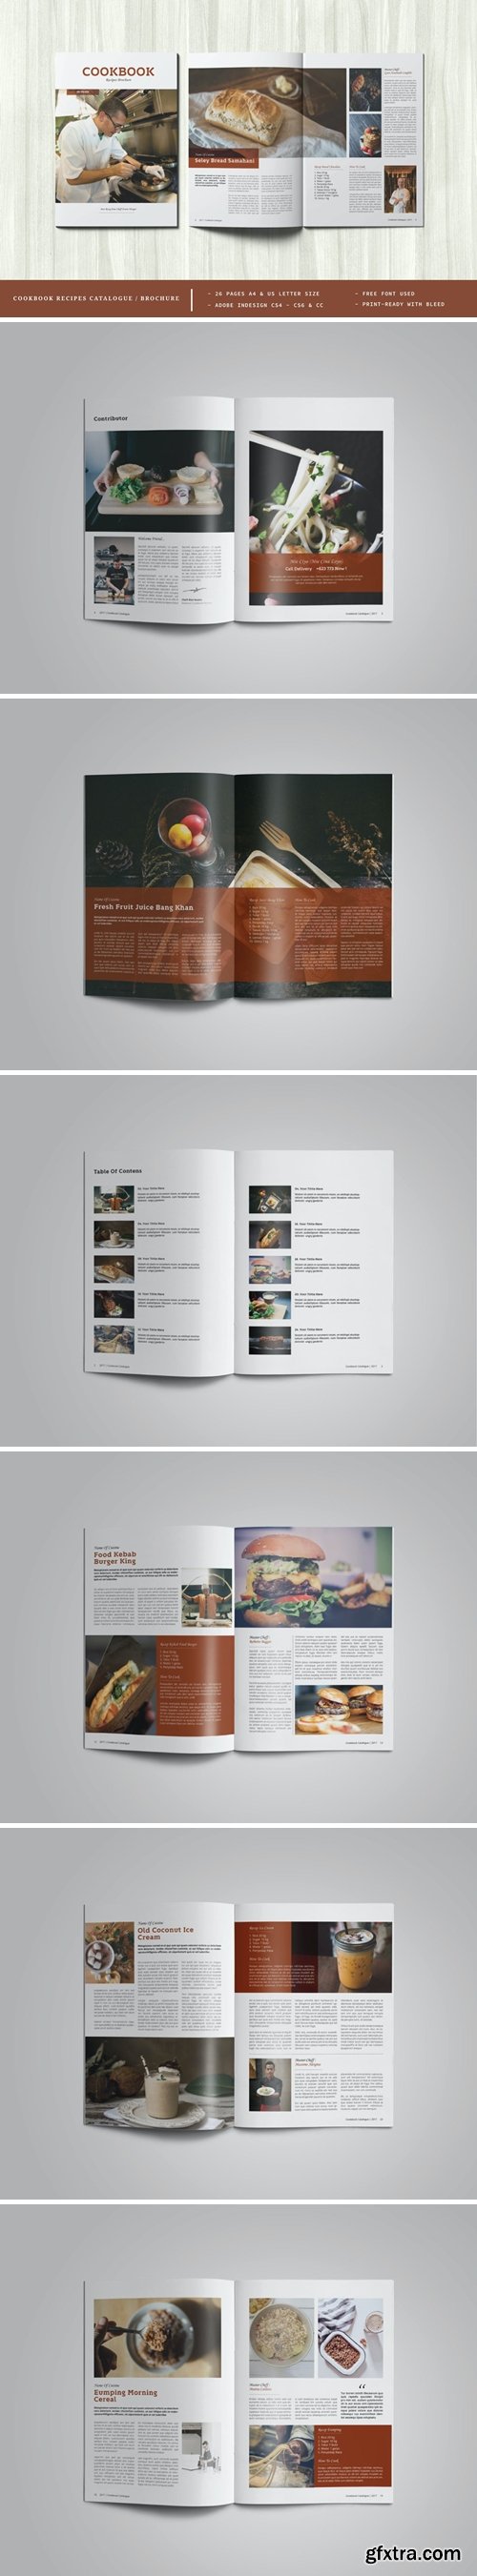 Cookbook Recipes Catalogue / Brochure